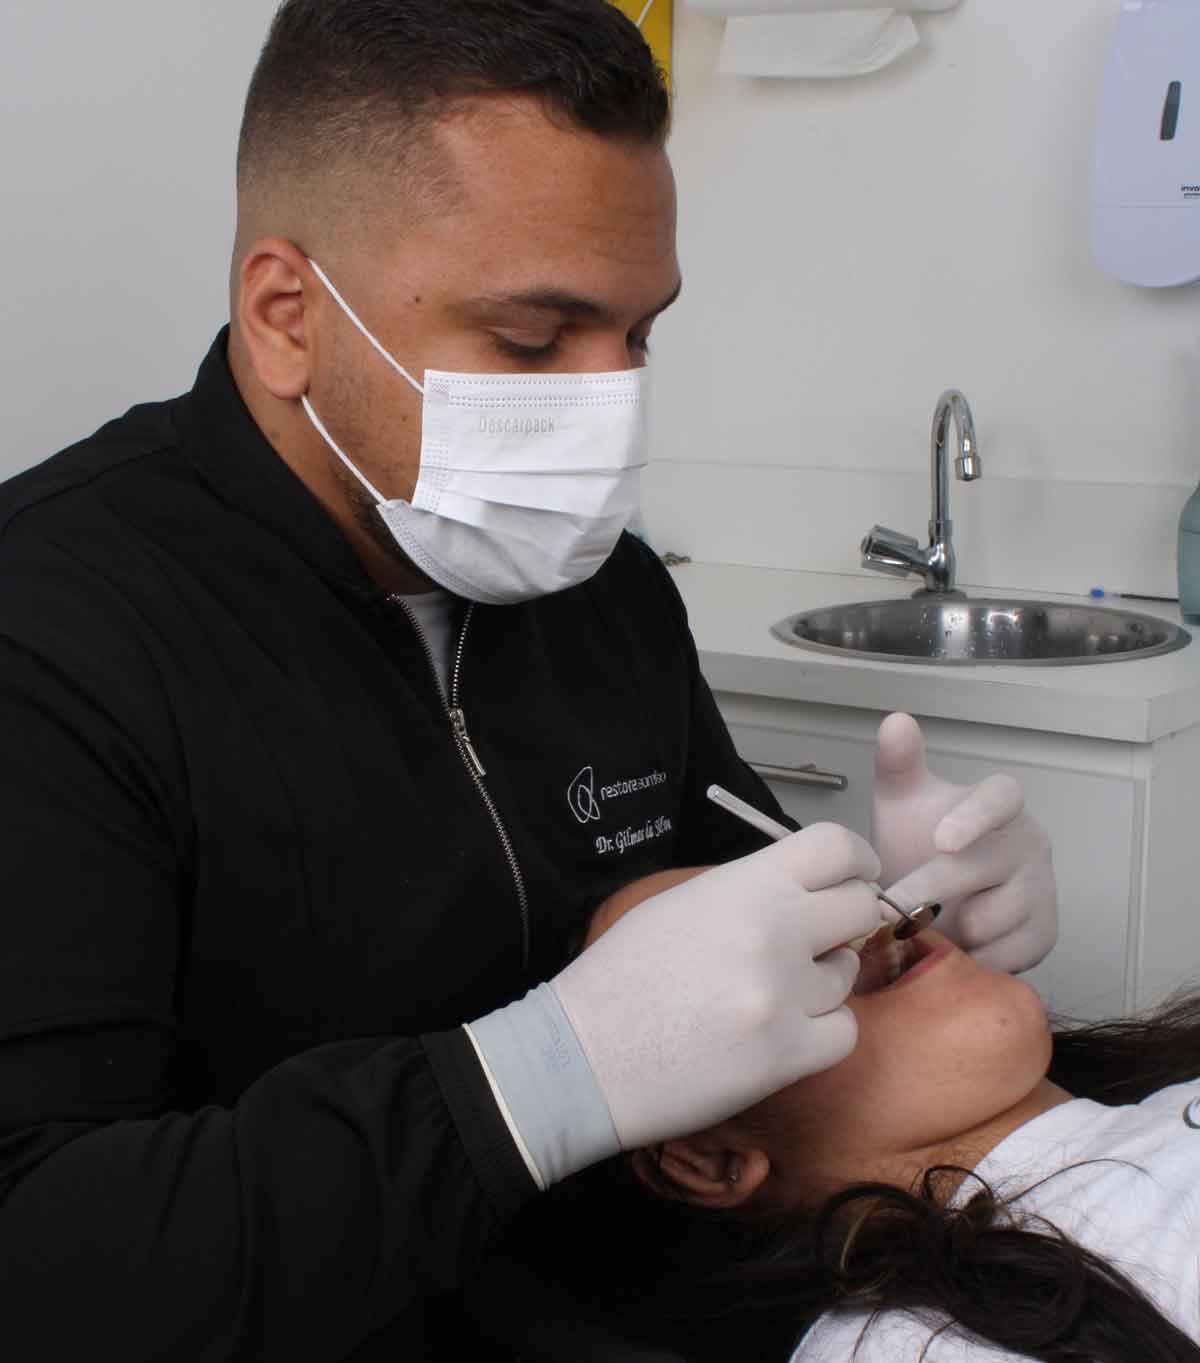 Implante dentário de carga imediata: dr. Gilmar da Silva explica como funciona a cirurgia